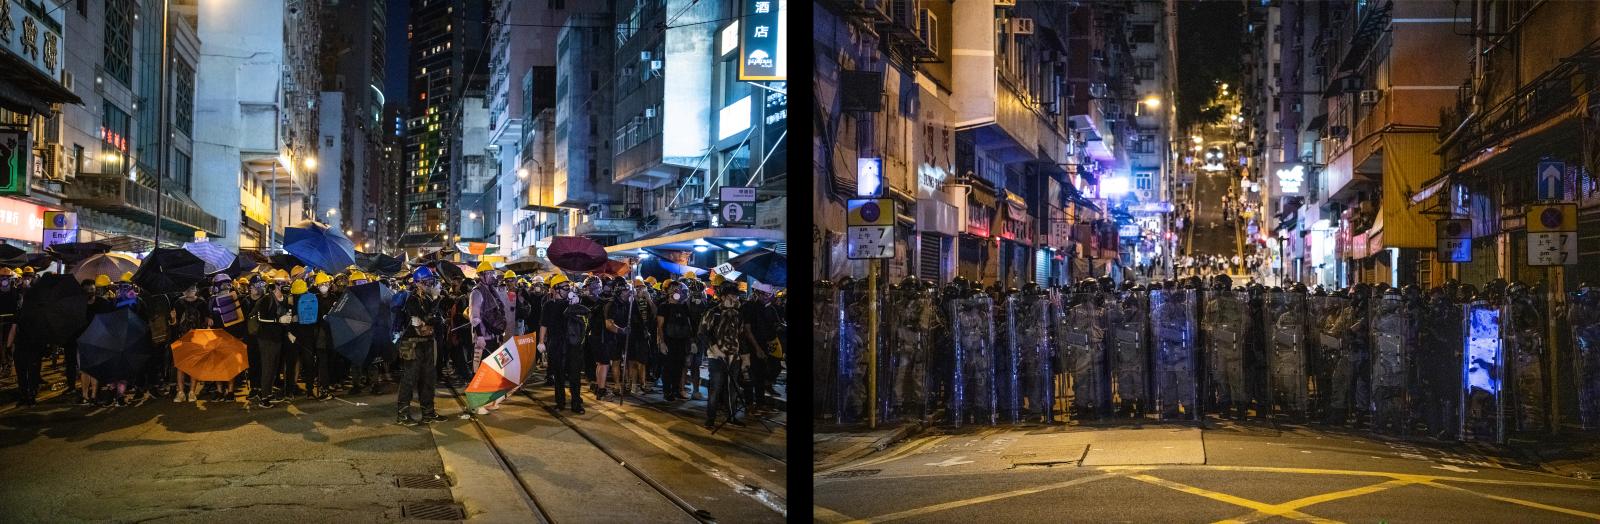 Image from Hong Kong Protests 2019